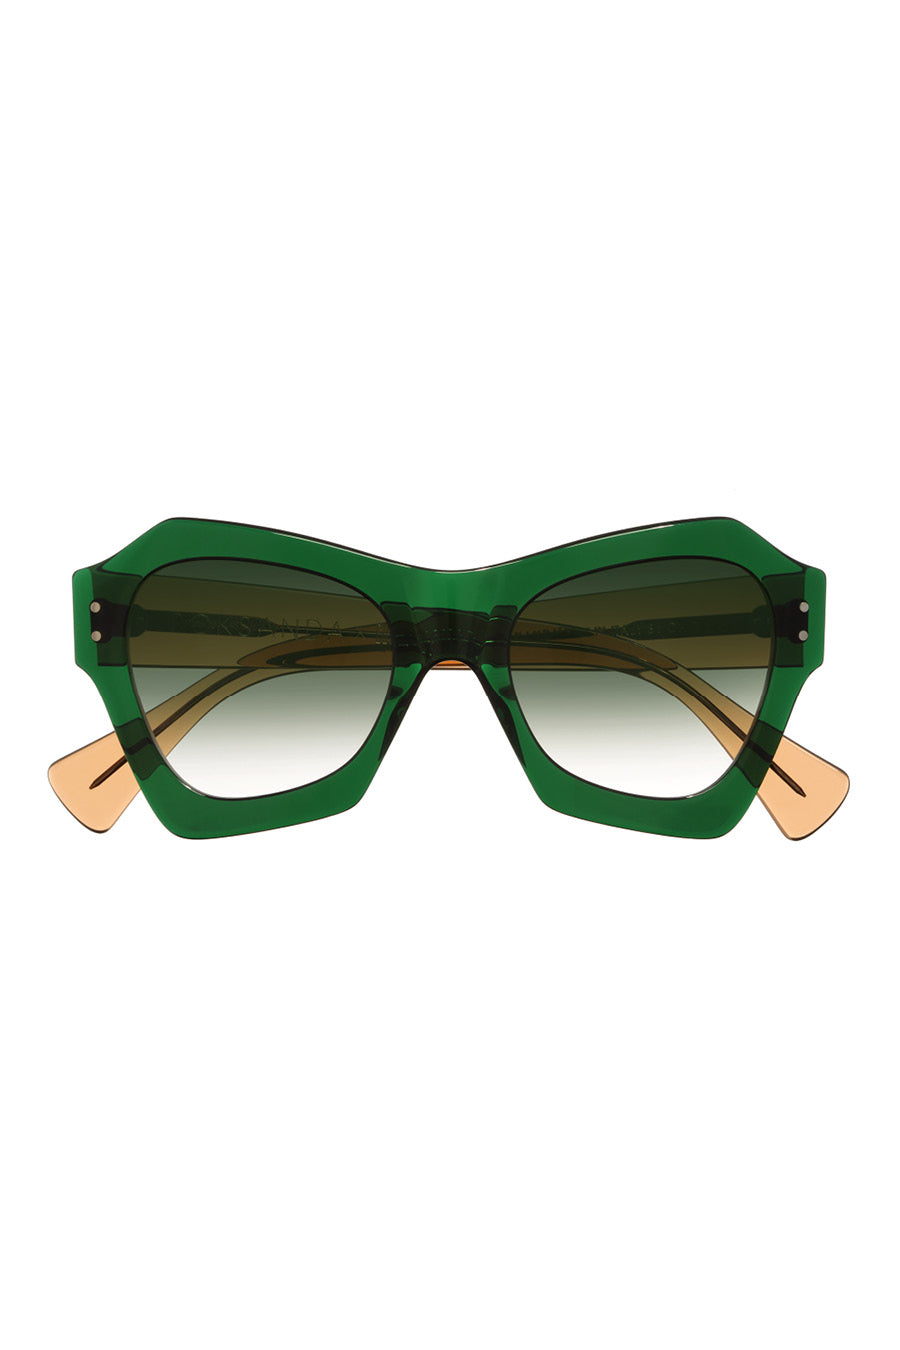 Chamomile Round Green Full-Frame TR90 Sunglasses | GlassesShop